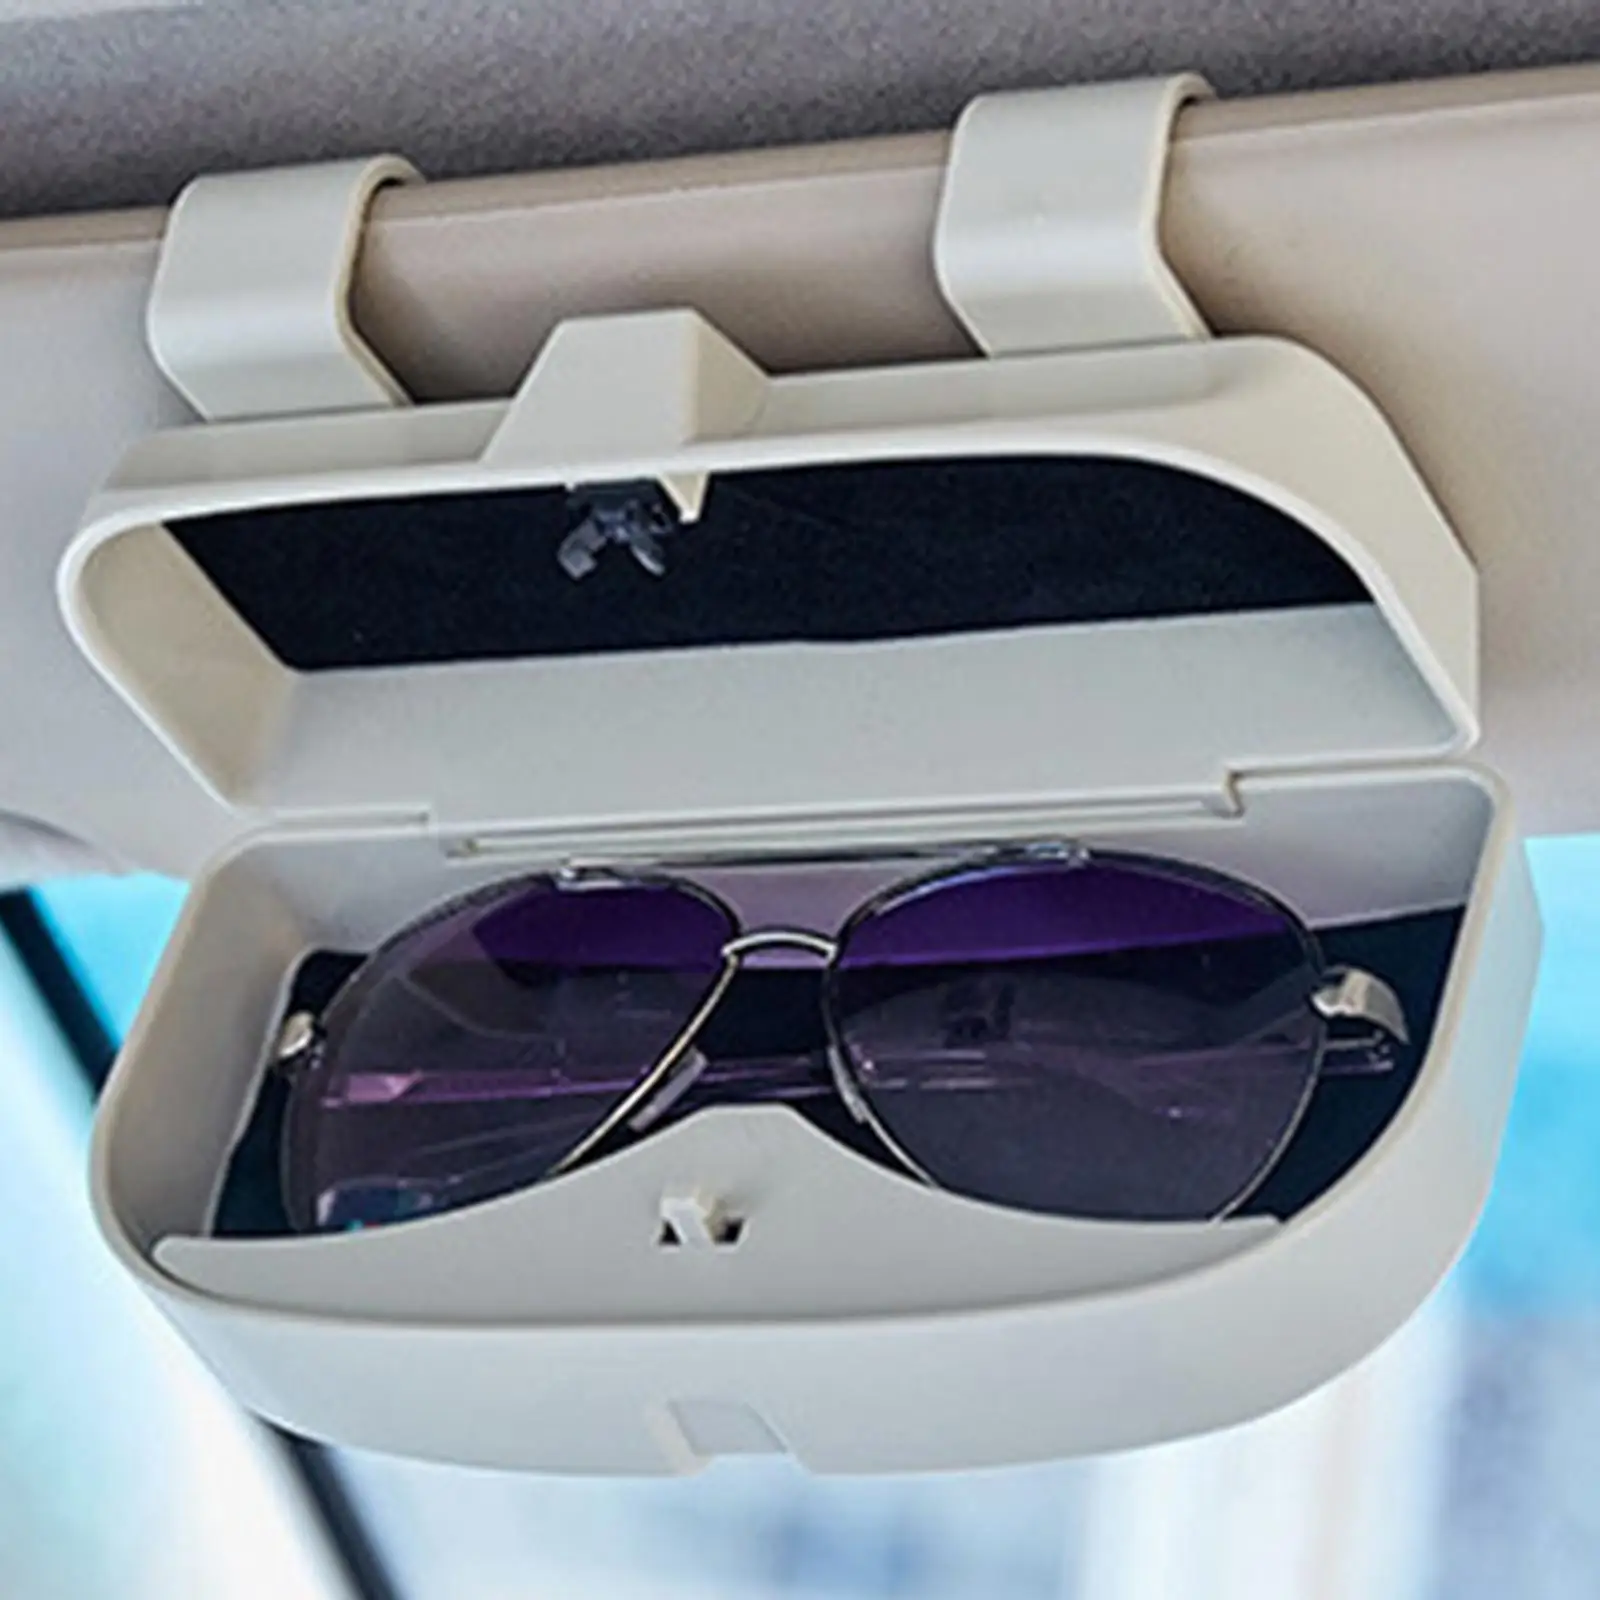 Universal Sun Glasses Holder Organizer Easy to Install Car Visor Glasses Case for Suvs